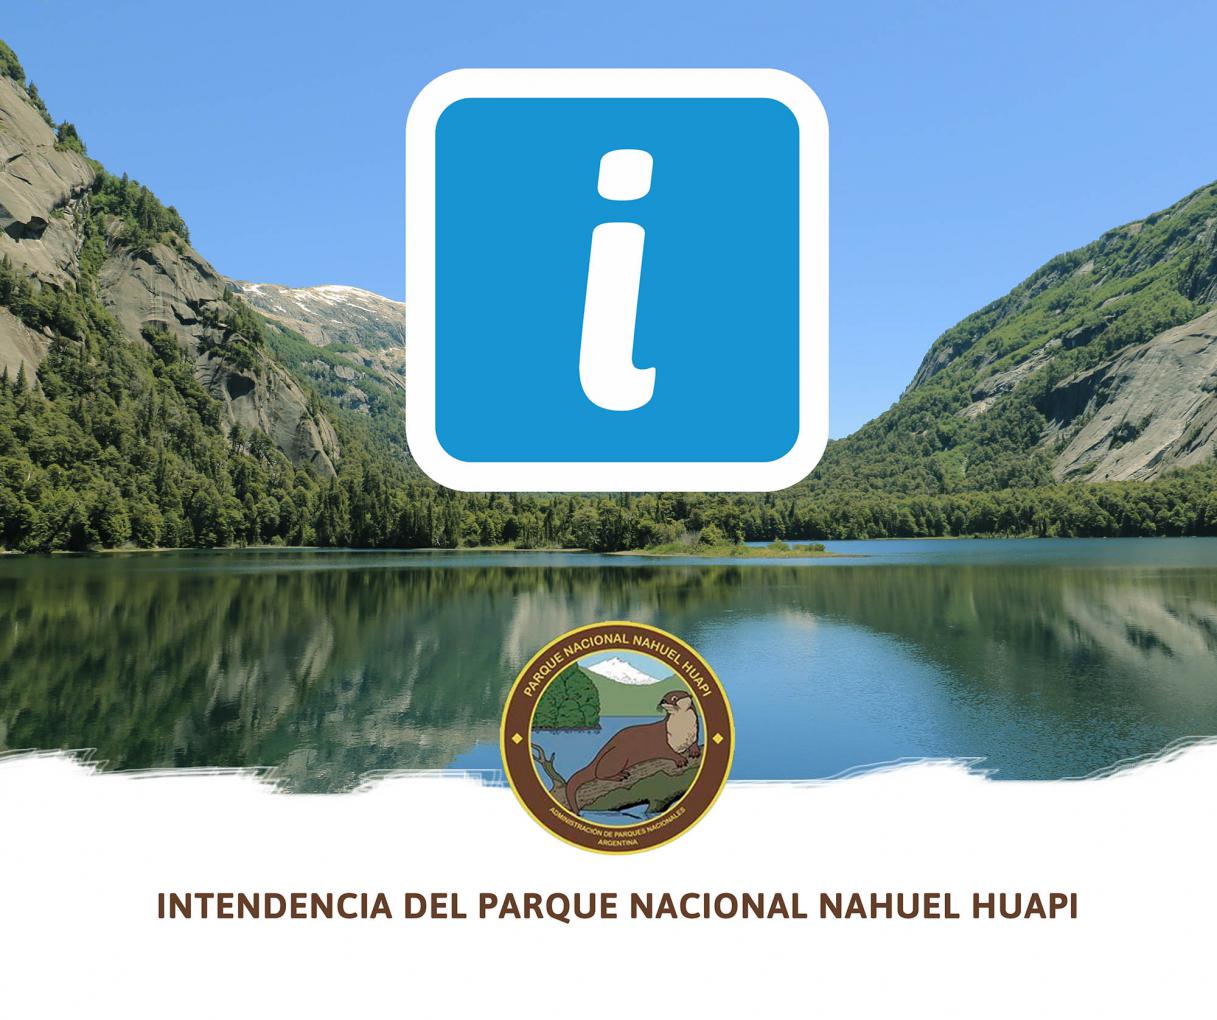 Precauci&oacute;n por  fuertes vientos en el Parque Nacional Nahuel Huapi y Parque Nacional Los Arrayanes